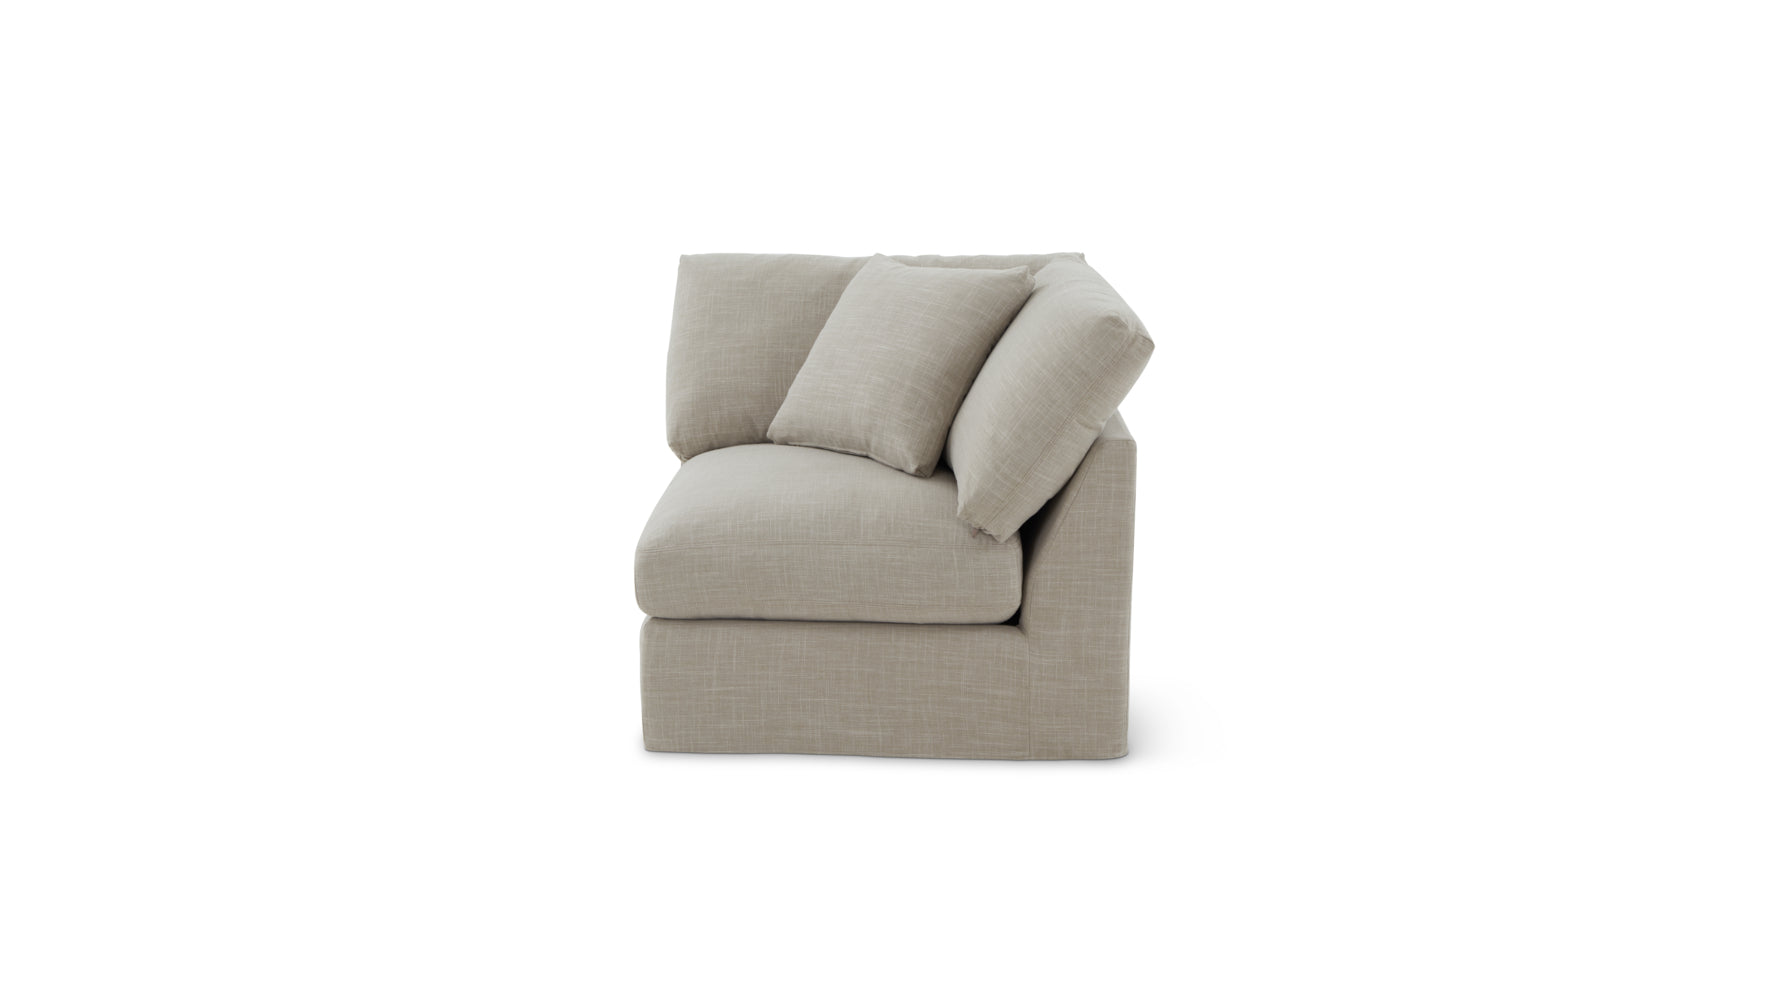 Get Together™ Corner Chair, Standard, Light Pebble - Image 1